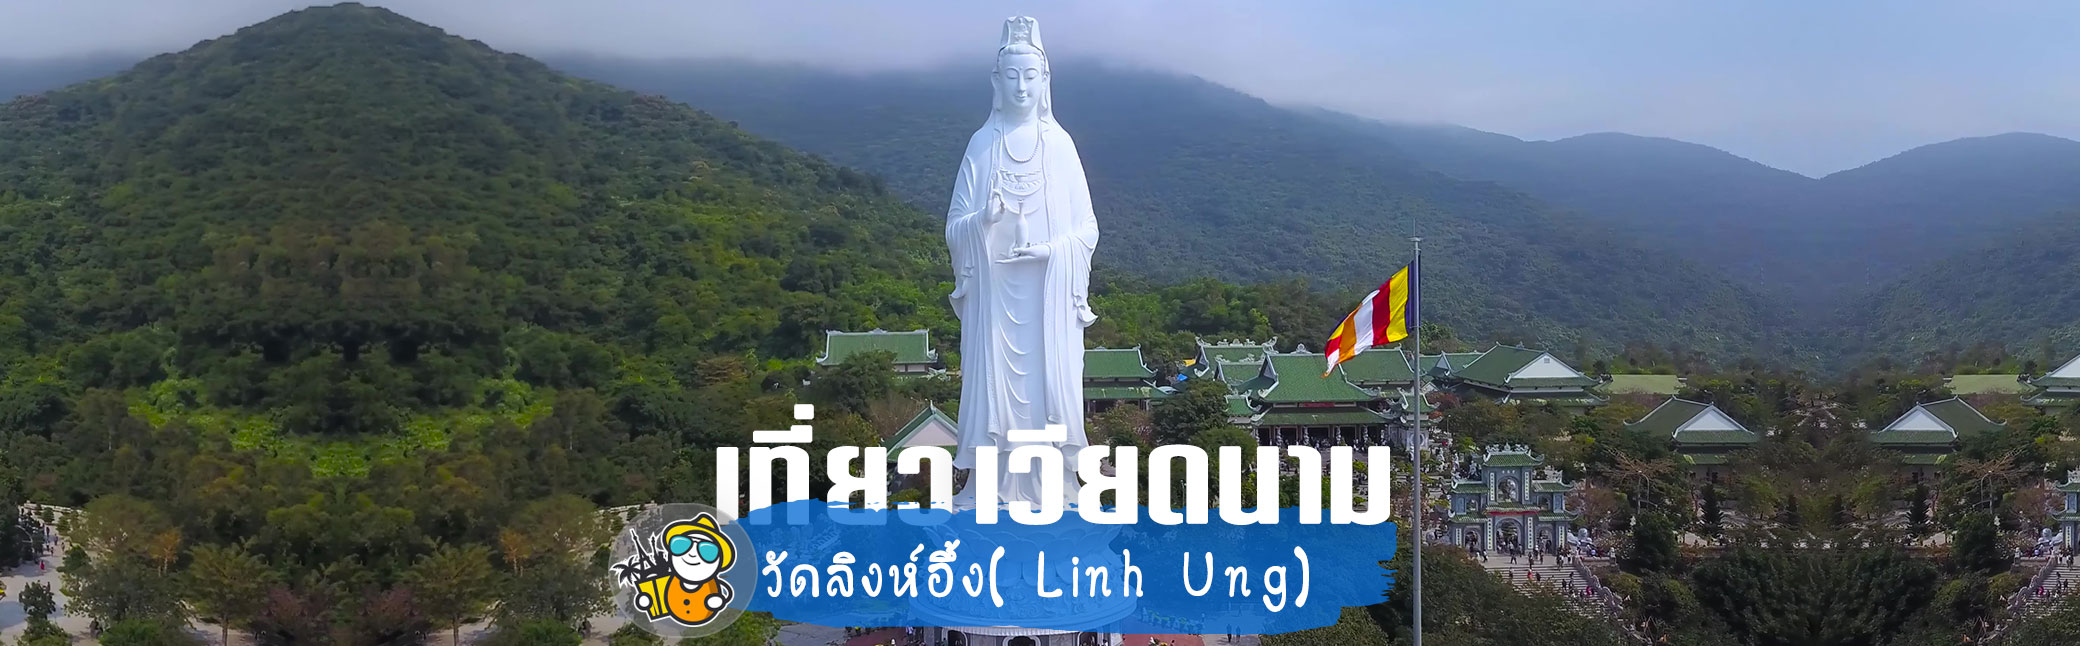 เที่ยวเวียดนาม วัดลิงห์อึ้ง( Linh Ung Temple ) ไหว้เจ้าแม่กวนอิม องค์ใหญ่ที่สุดของในโลก